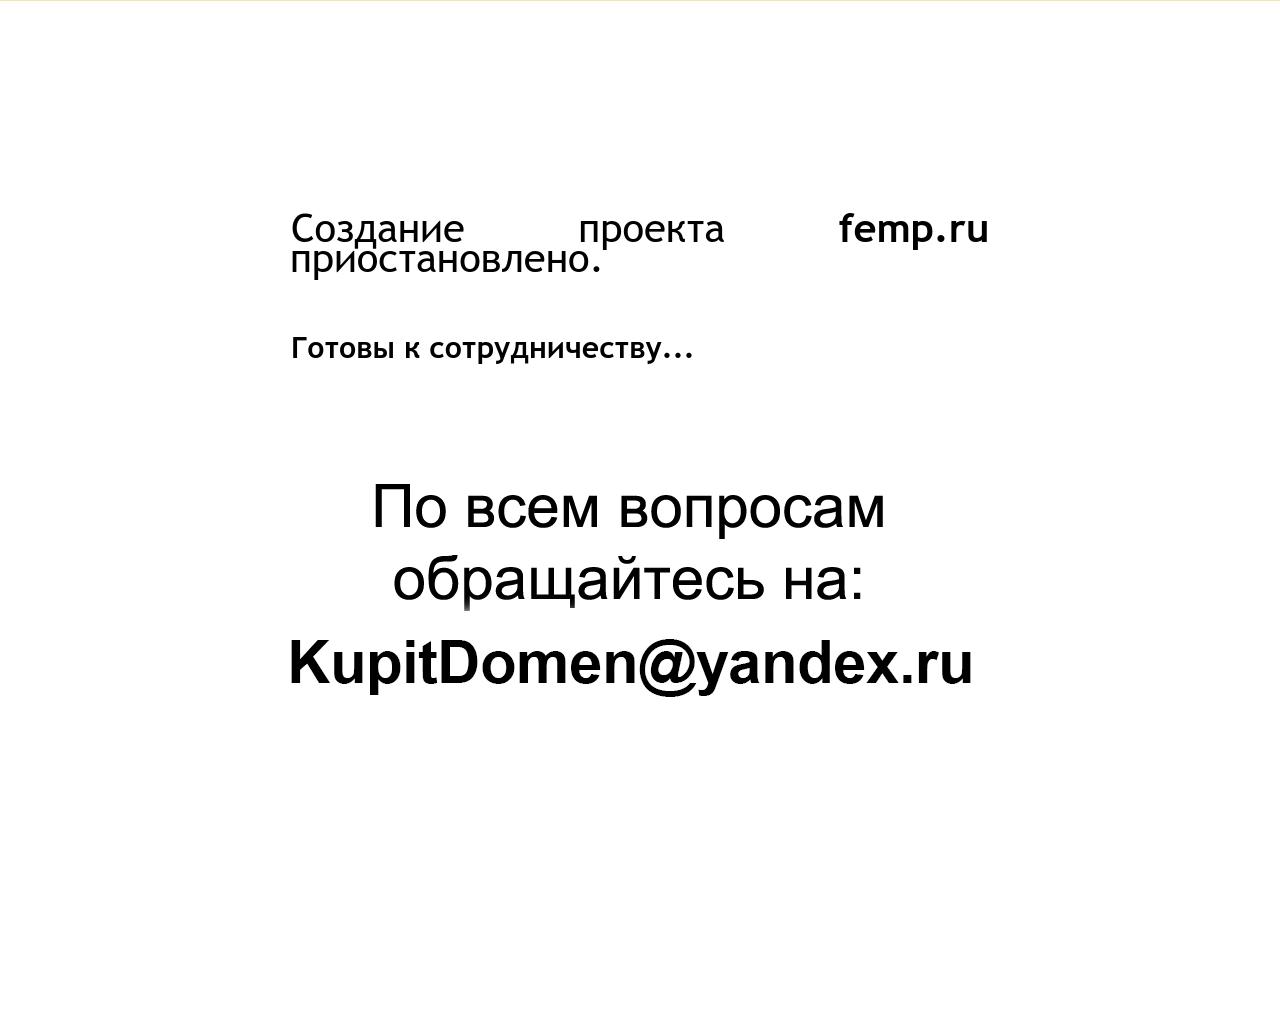 Изображение сайта femp.ru в разрешении 1280x1024